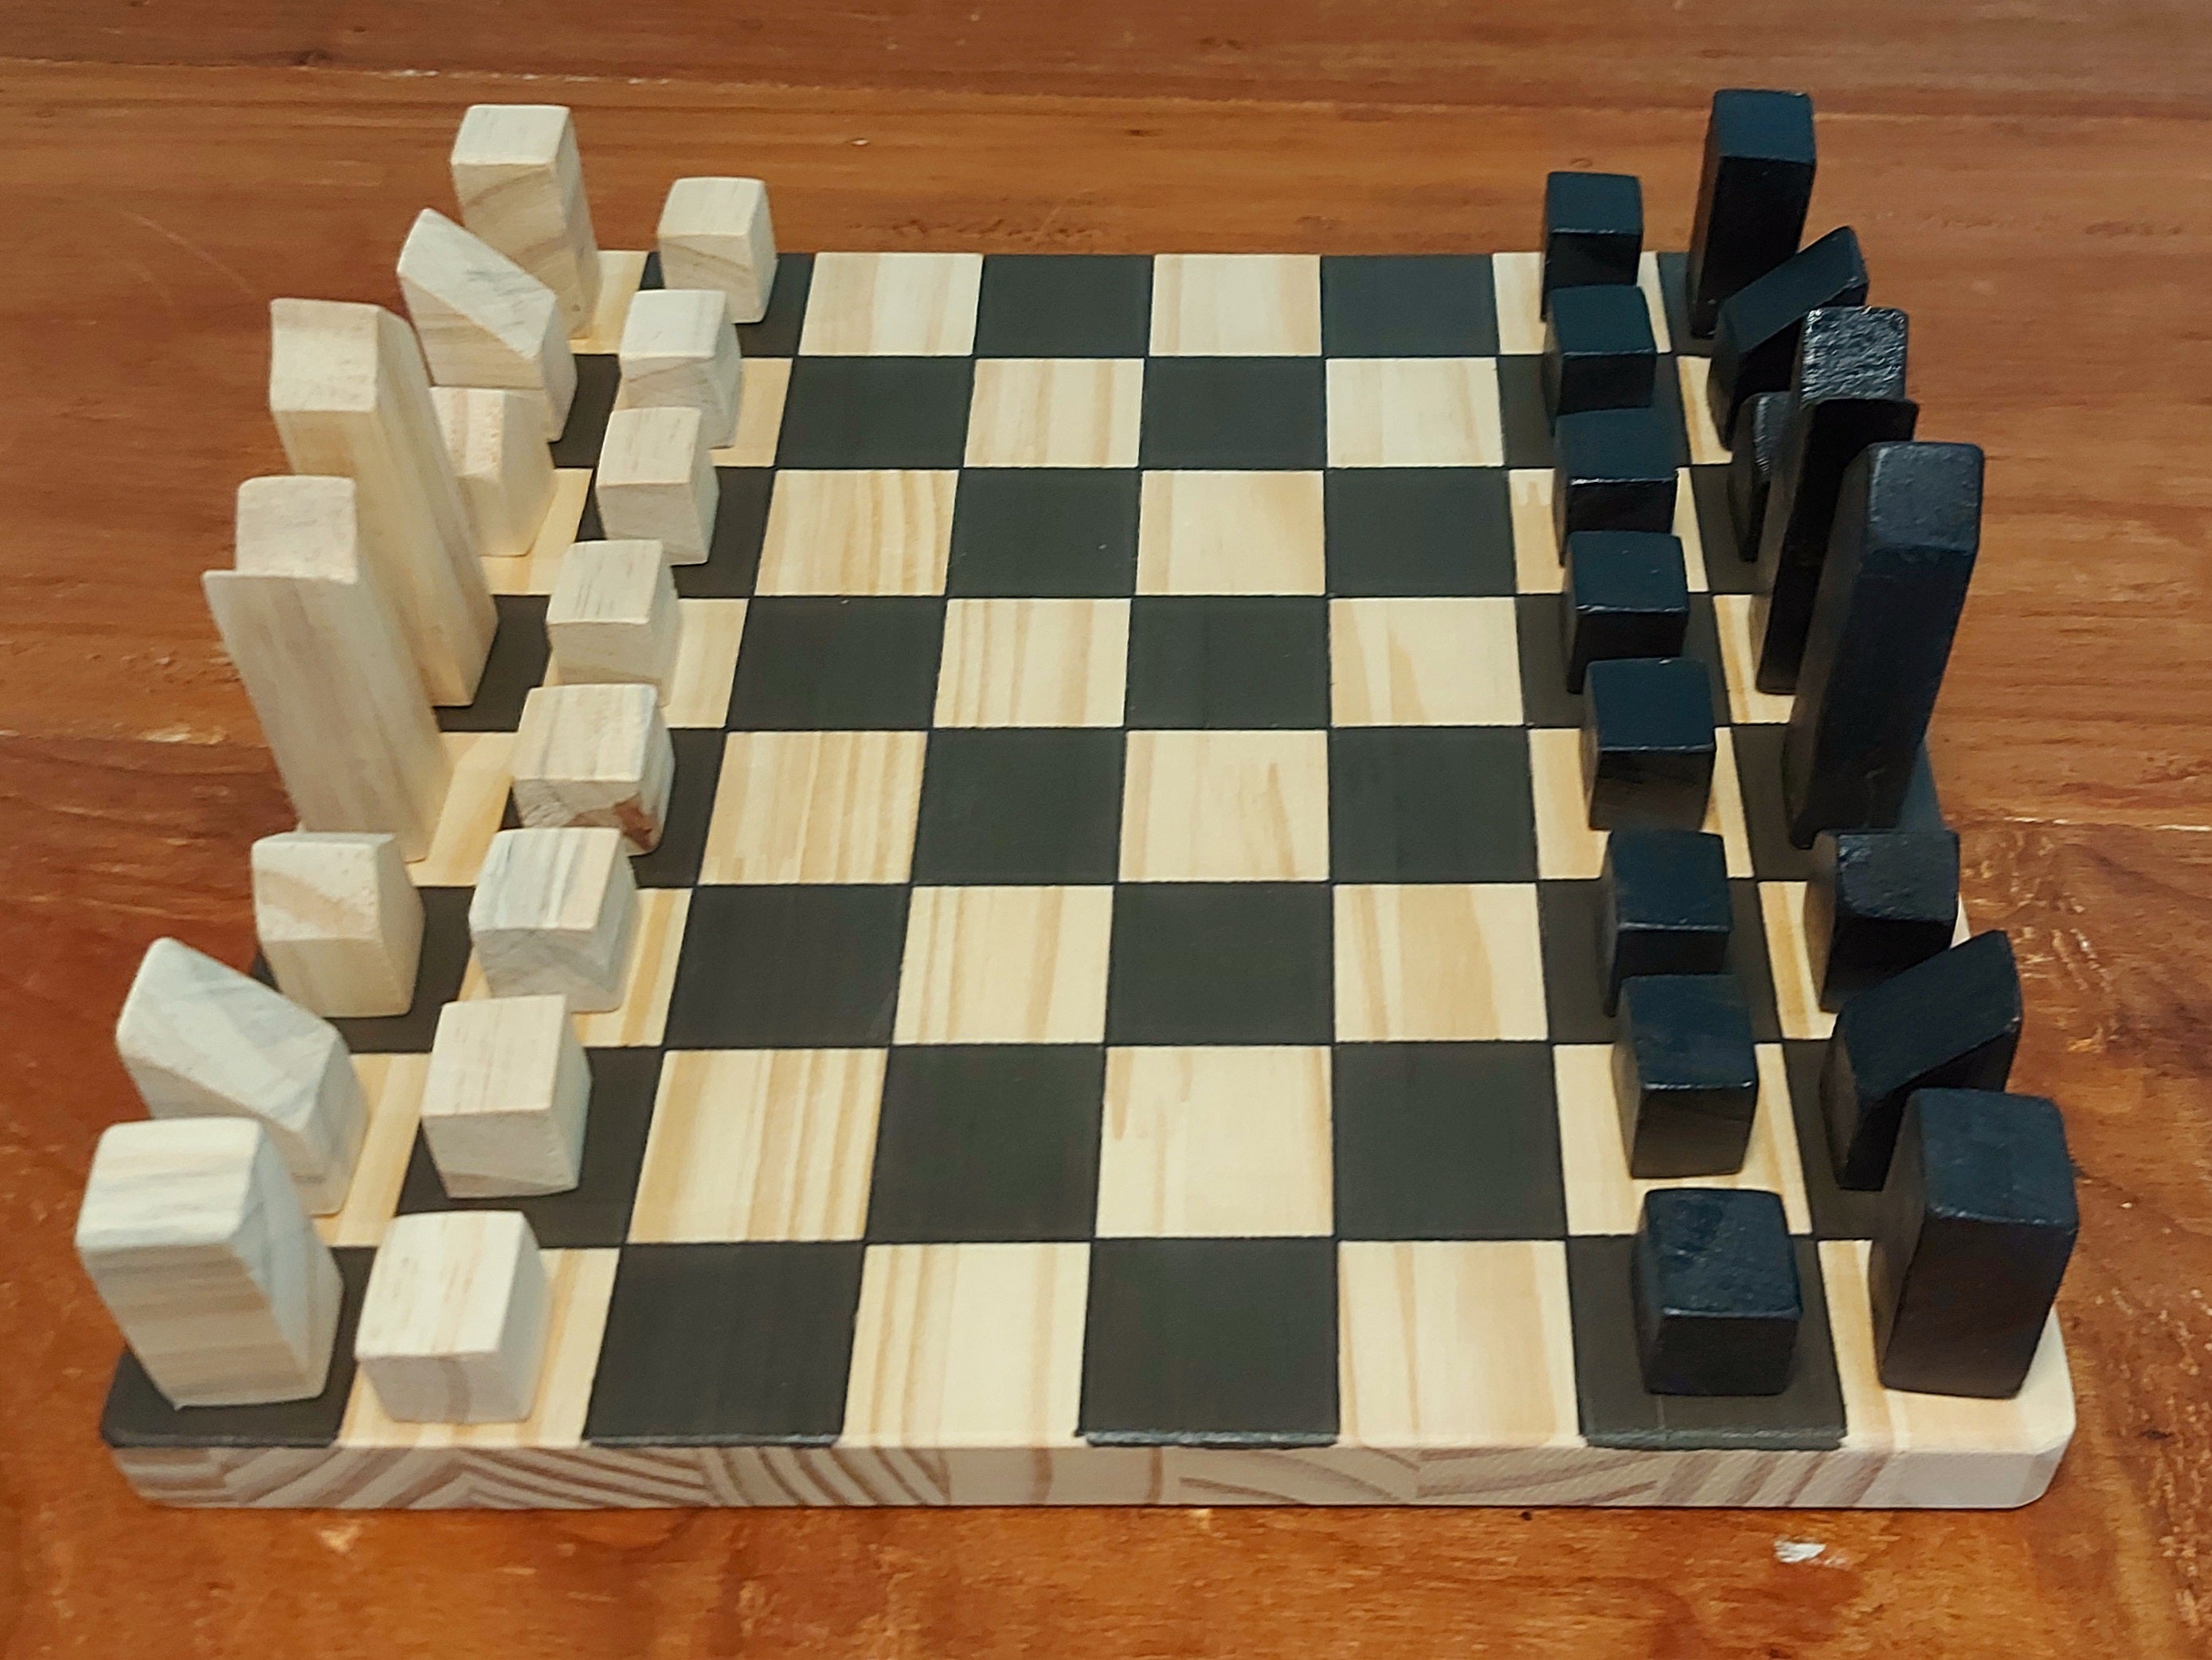 Jogo de xadrez artesanal, confeccionado em madeira e pa